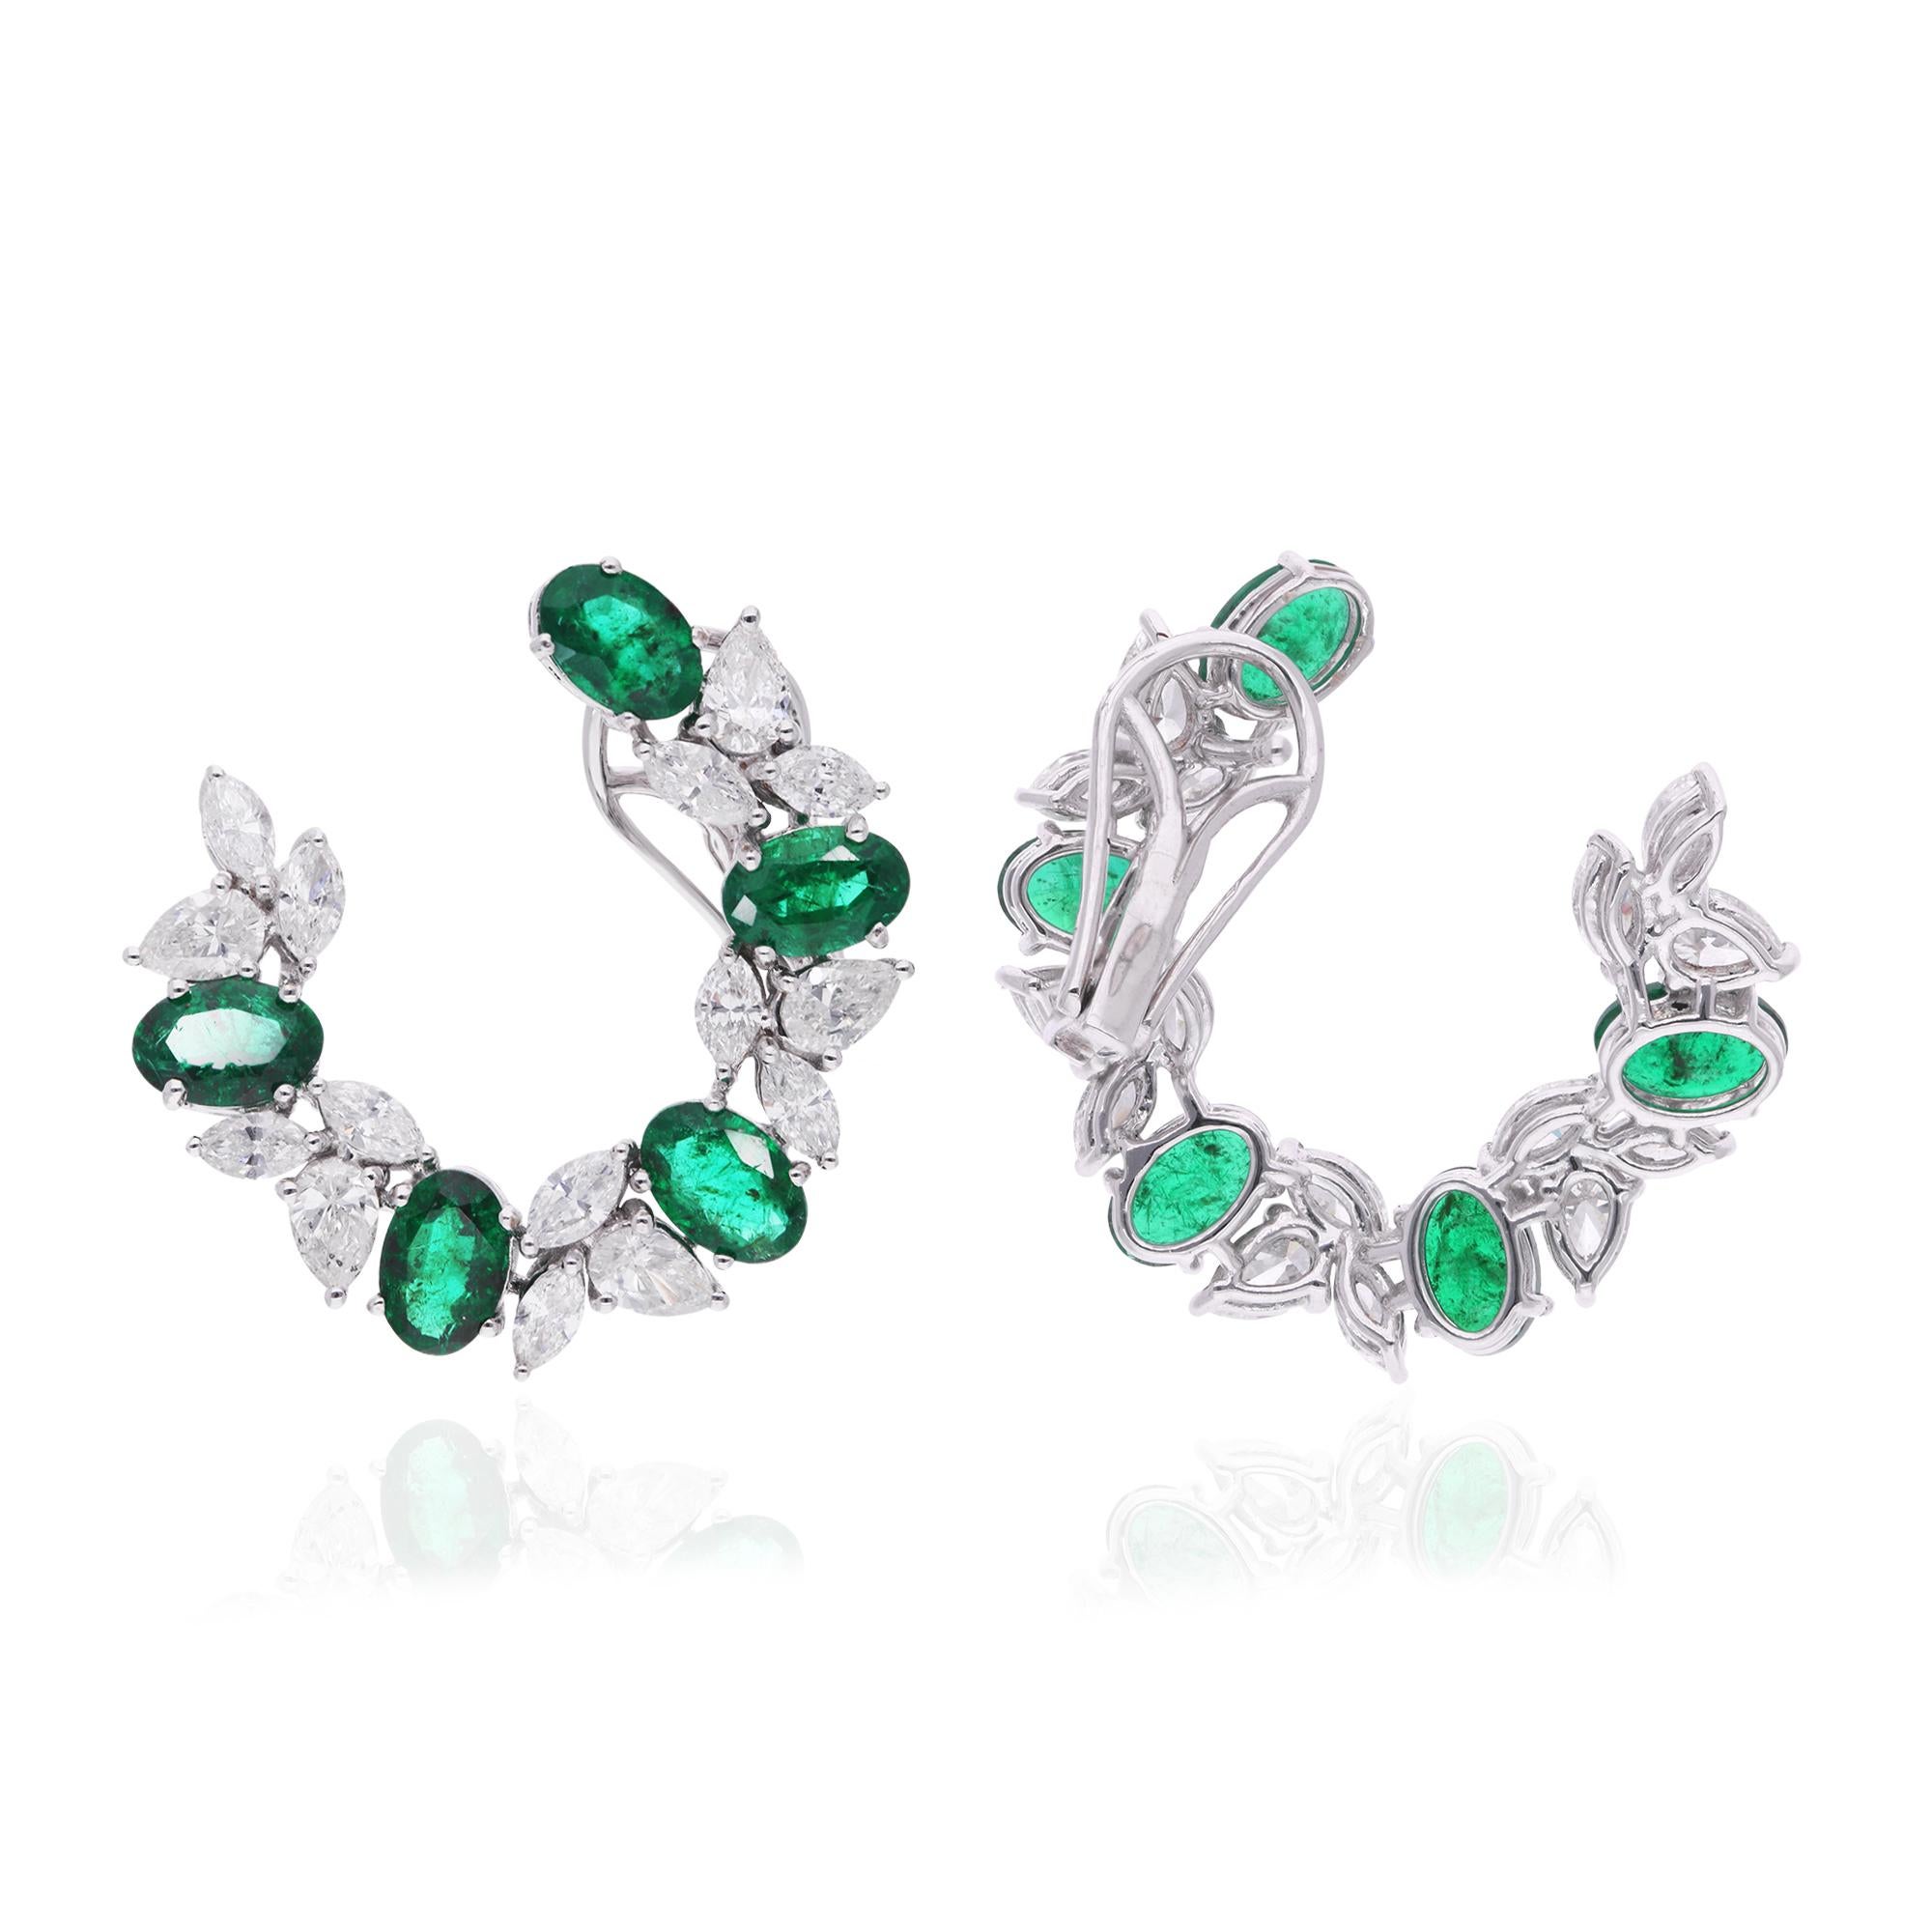 Die ovalen Smaragdsteine stehen im Mittelpunkt und strahlen in leuchtenden Farben und Brillanz. Elegant ergänzt werden sie durch funkelnde Diamanten, die sorgfältig entlang der Reifchen gefasst sind, um ihre Anziehungskraft zu erhöhen und dem Design